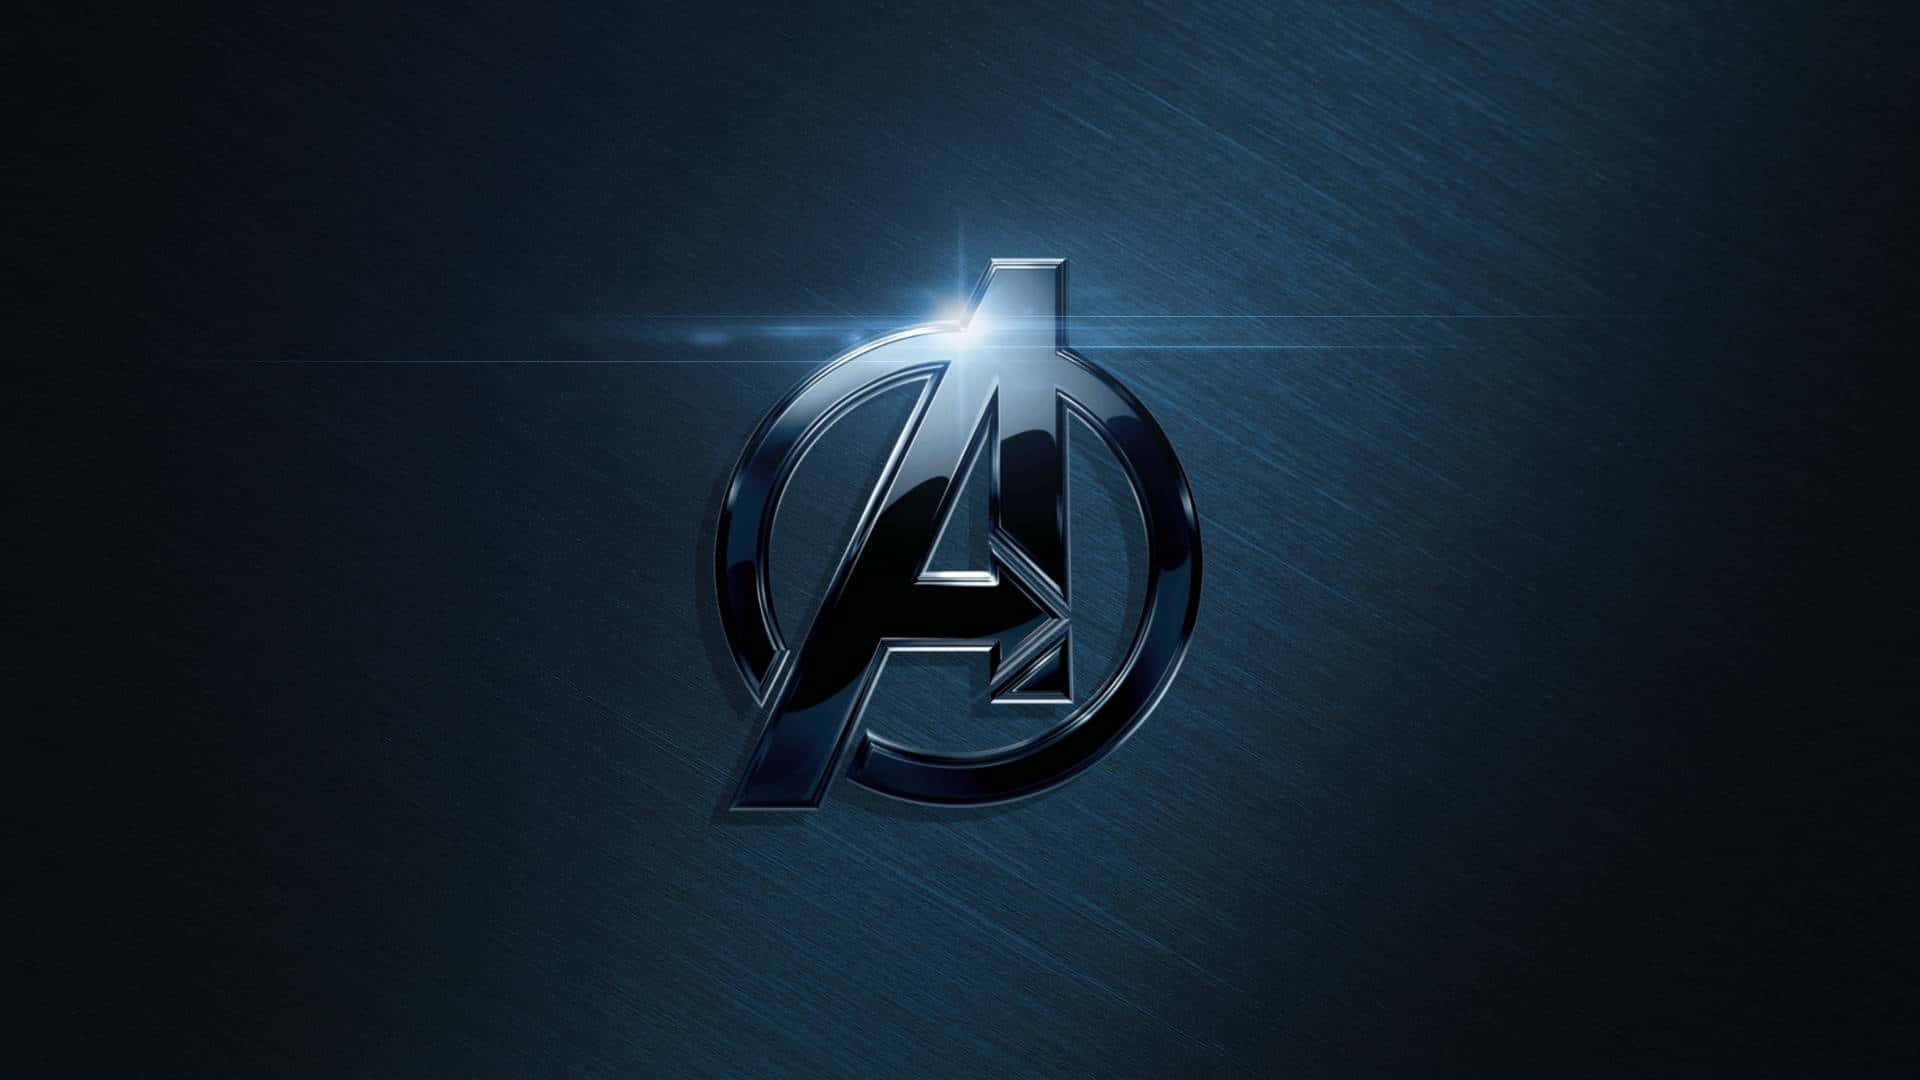 Dark Avengers Assemble in Stunning HD Wallpaper Wallpaper